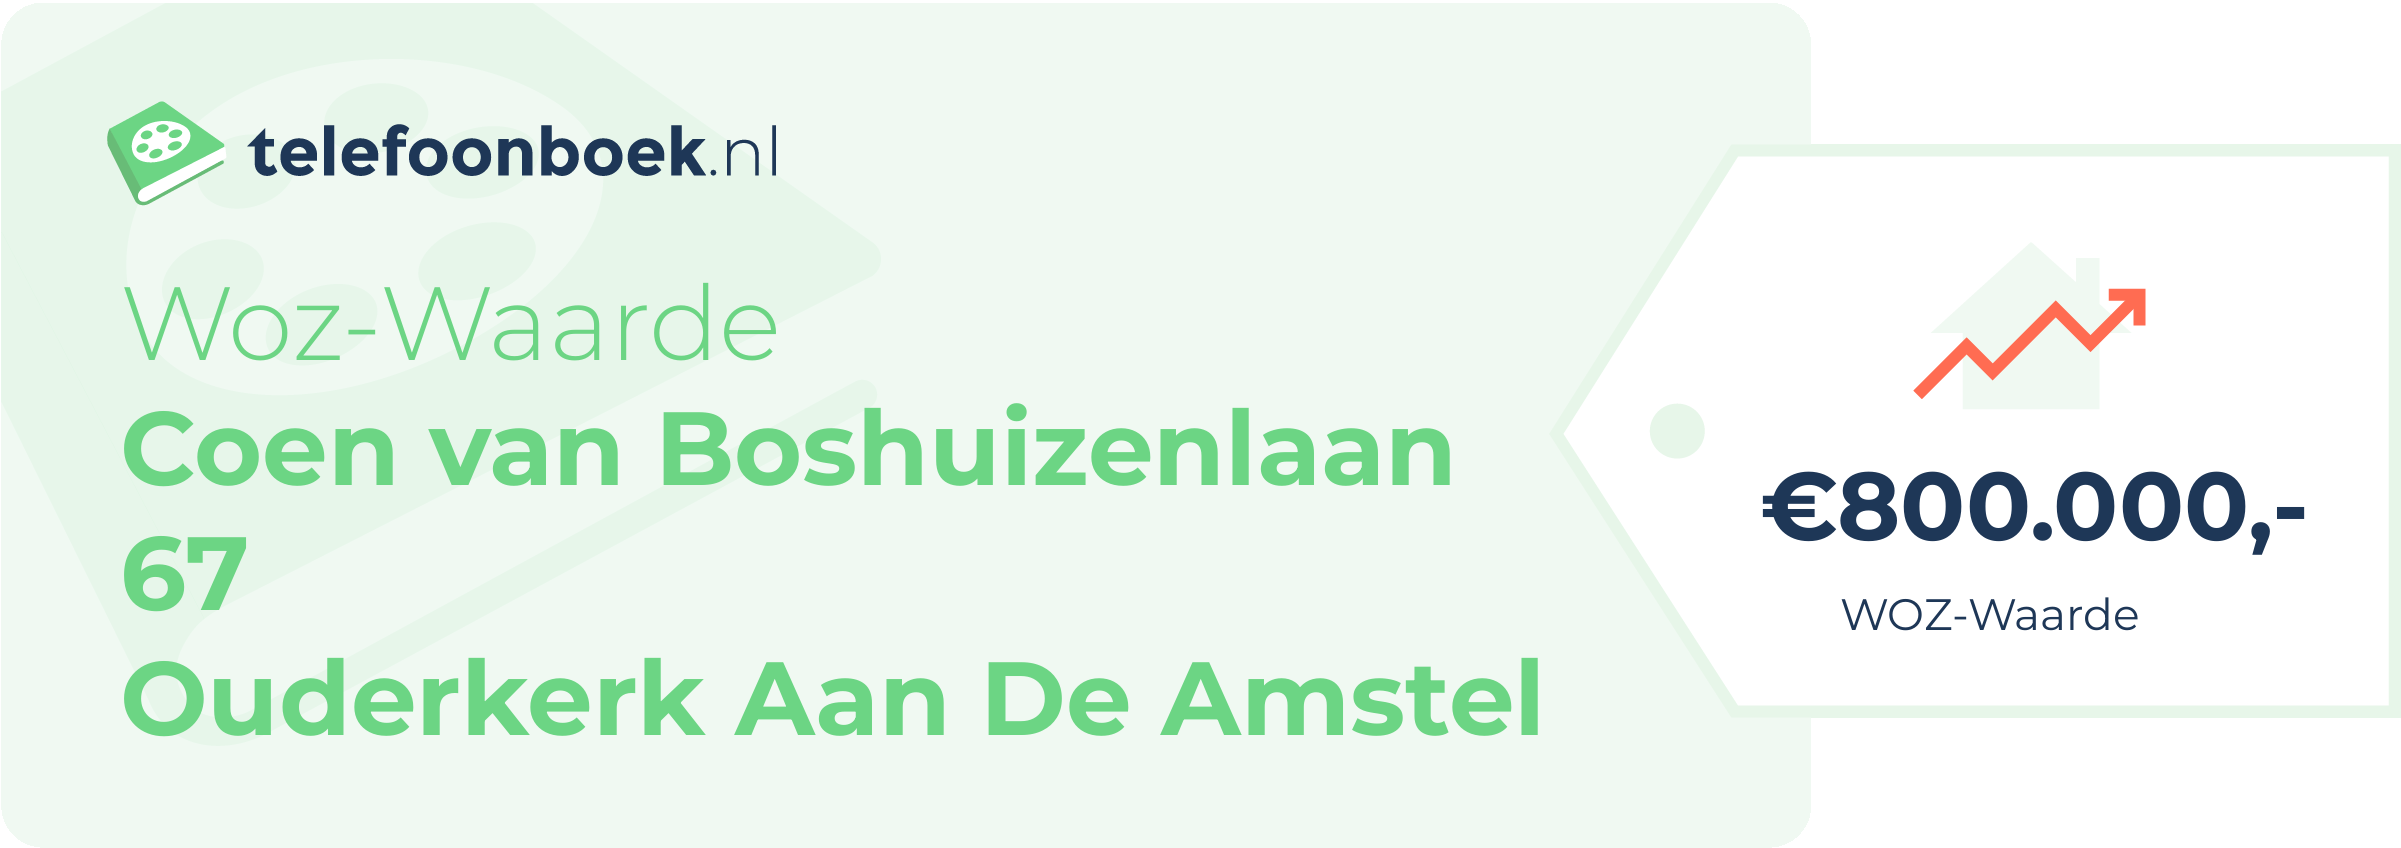 WOZ-waarde Coen Van Boshuizenlaan 67 Ouderkerk Aan De Amstel